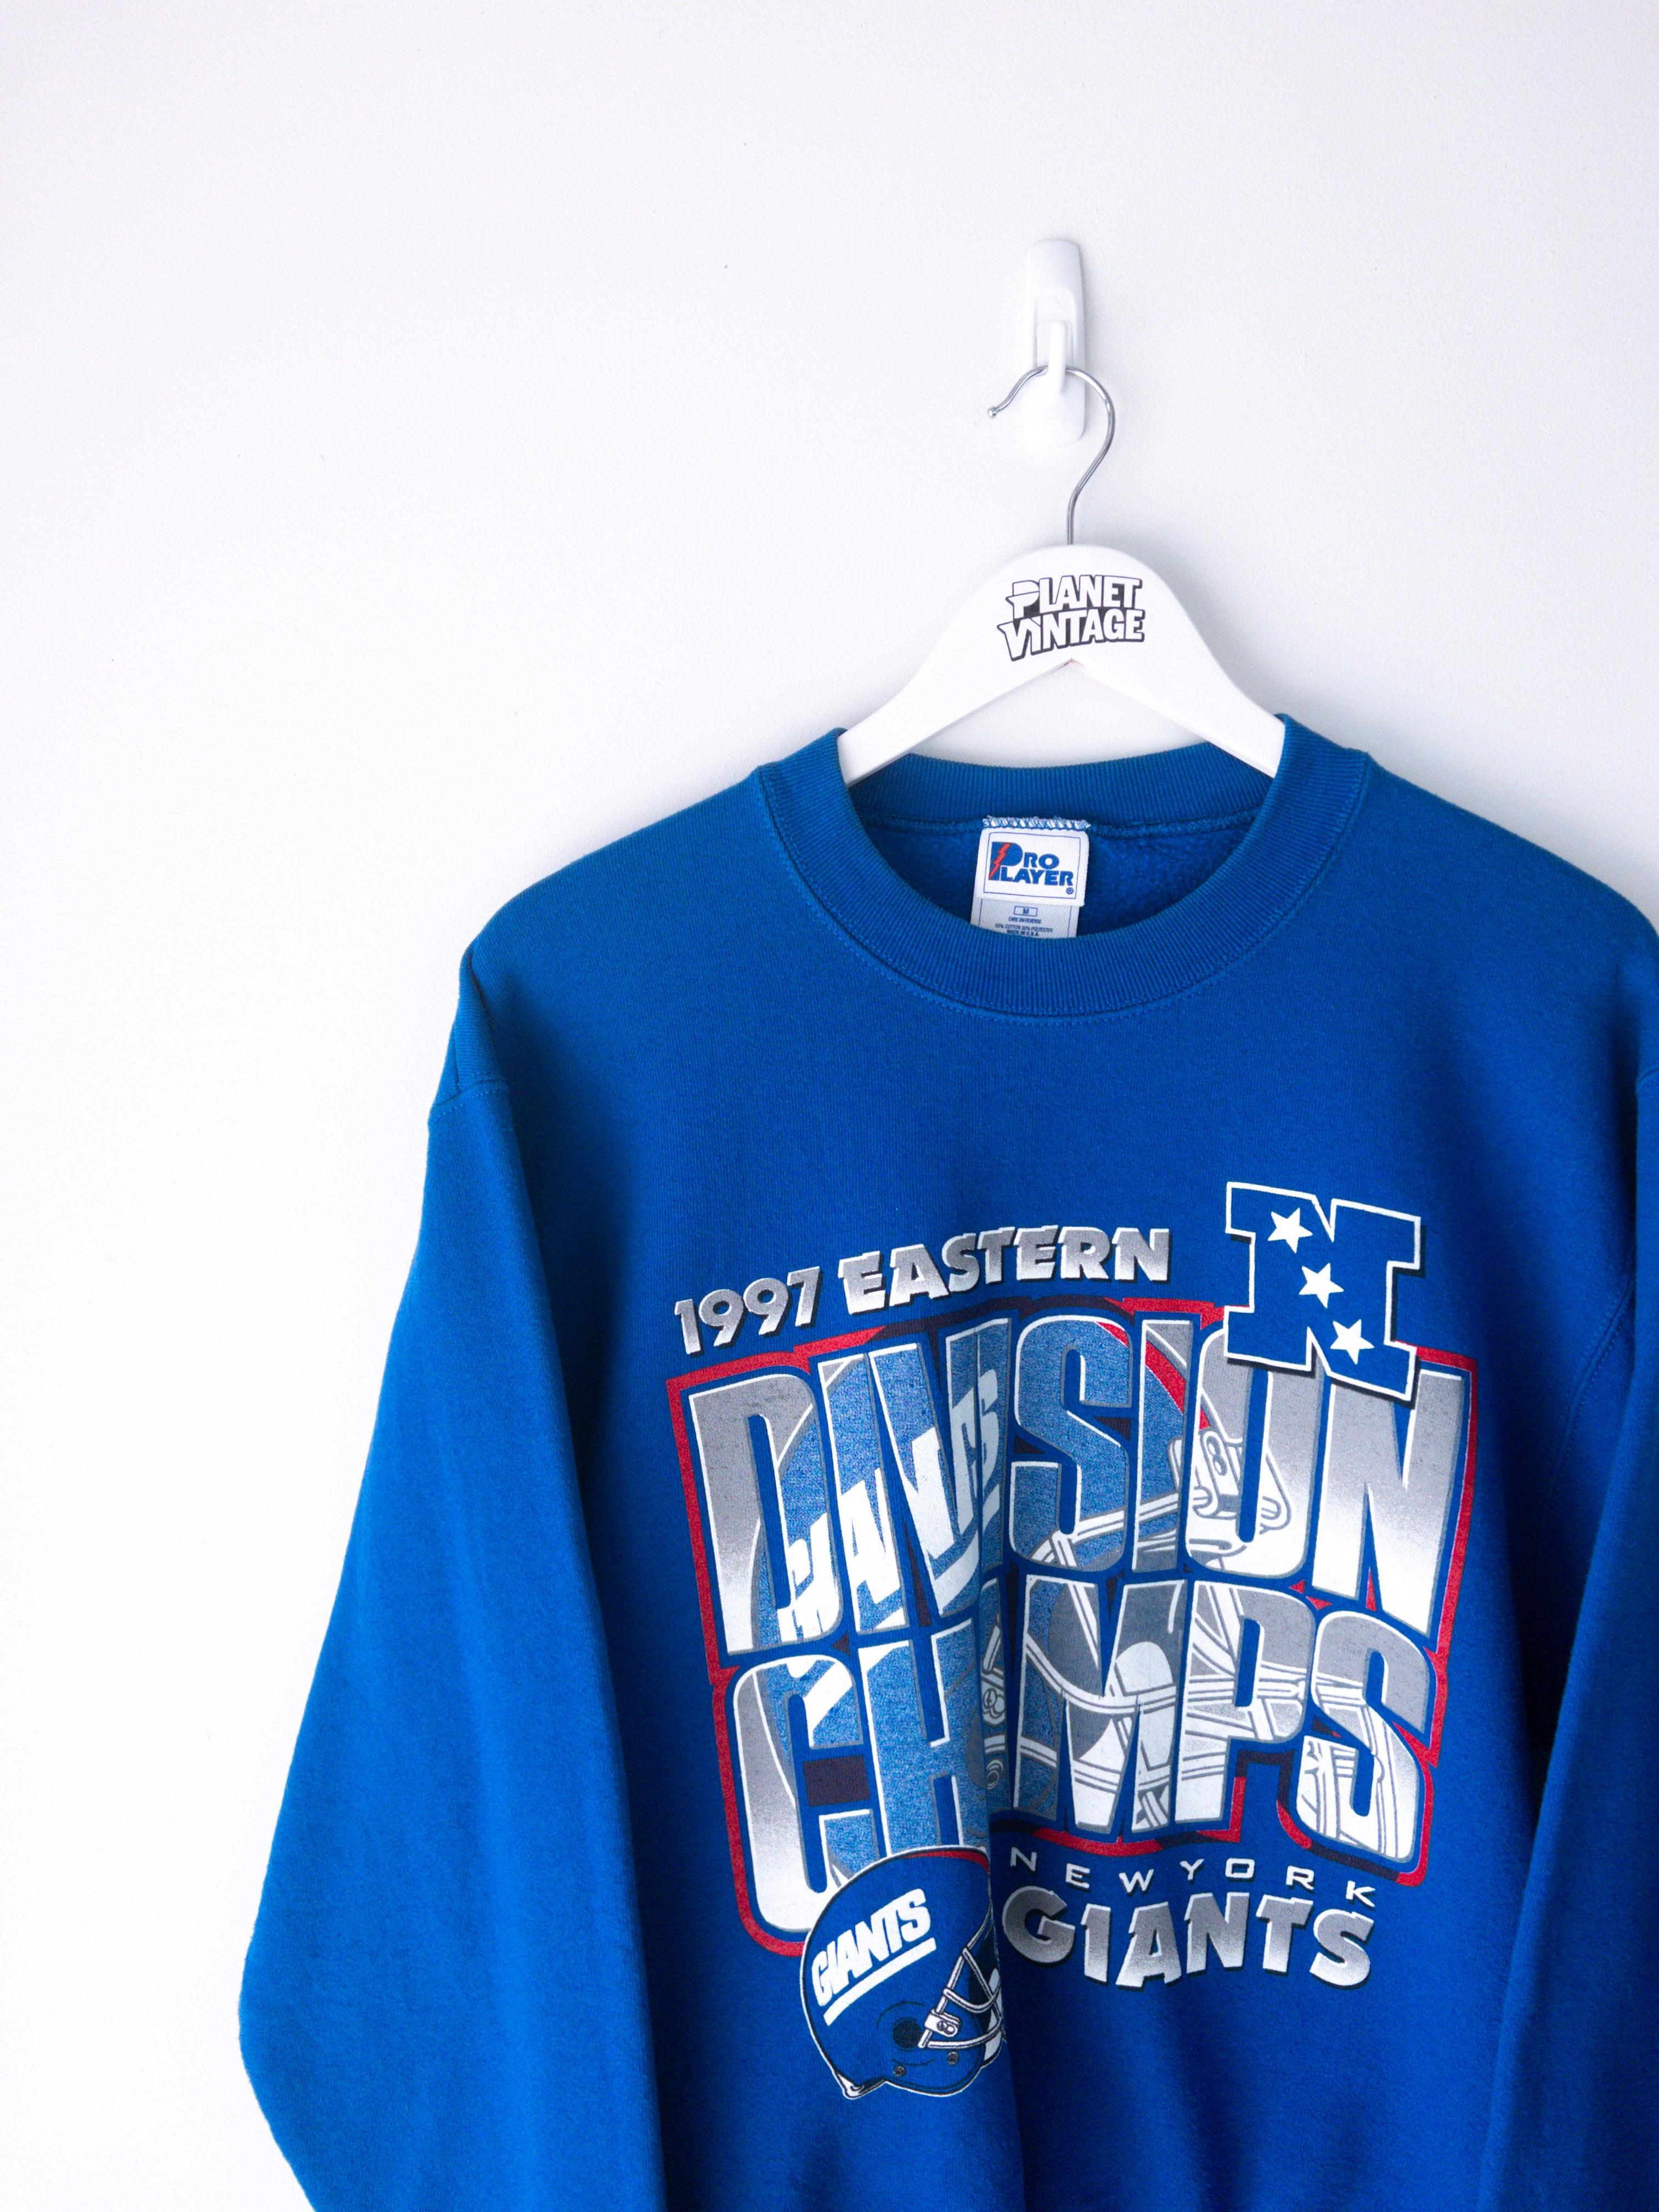 Vintage New York Giants 1997 Sweatshirt (M)